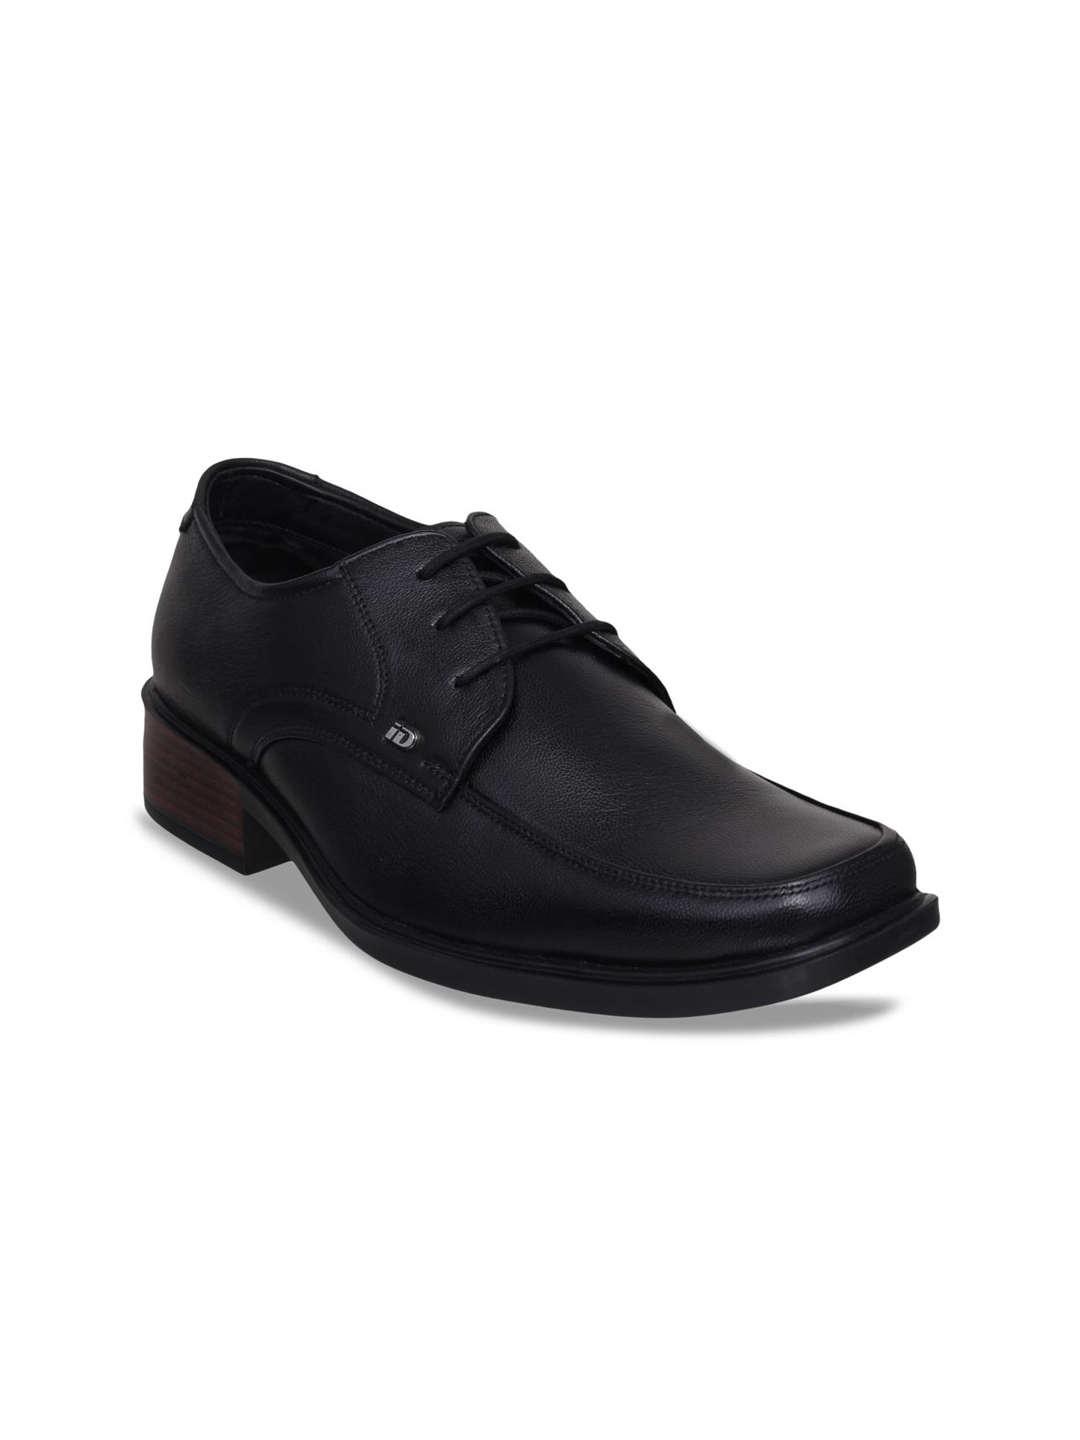 Buy ID Men Black Formal Leather Derbys - Formal Shoes for Men 8024549 ...